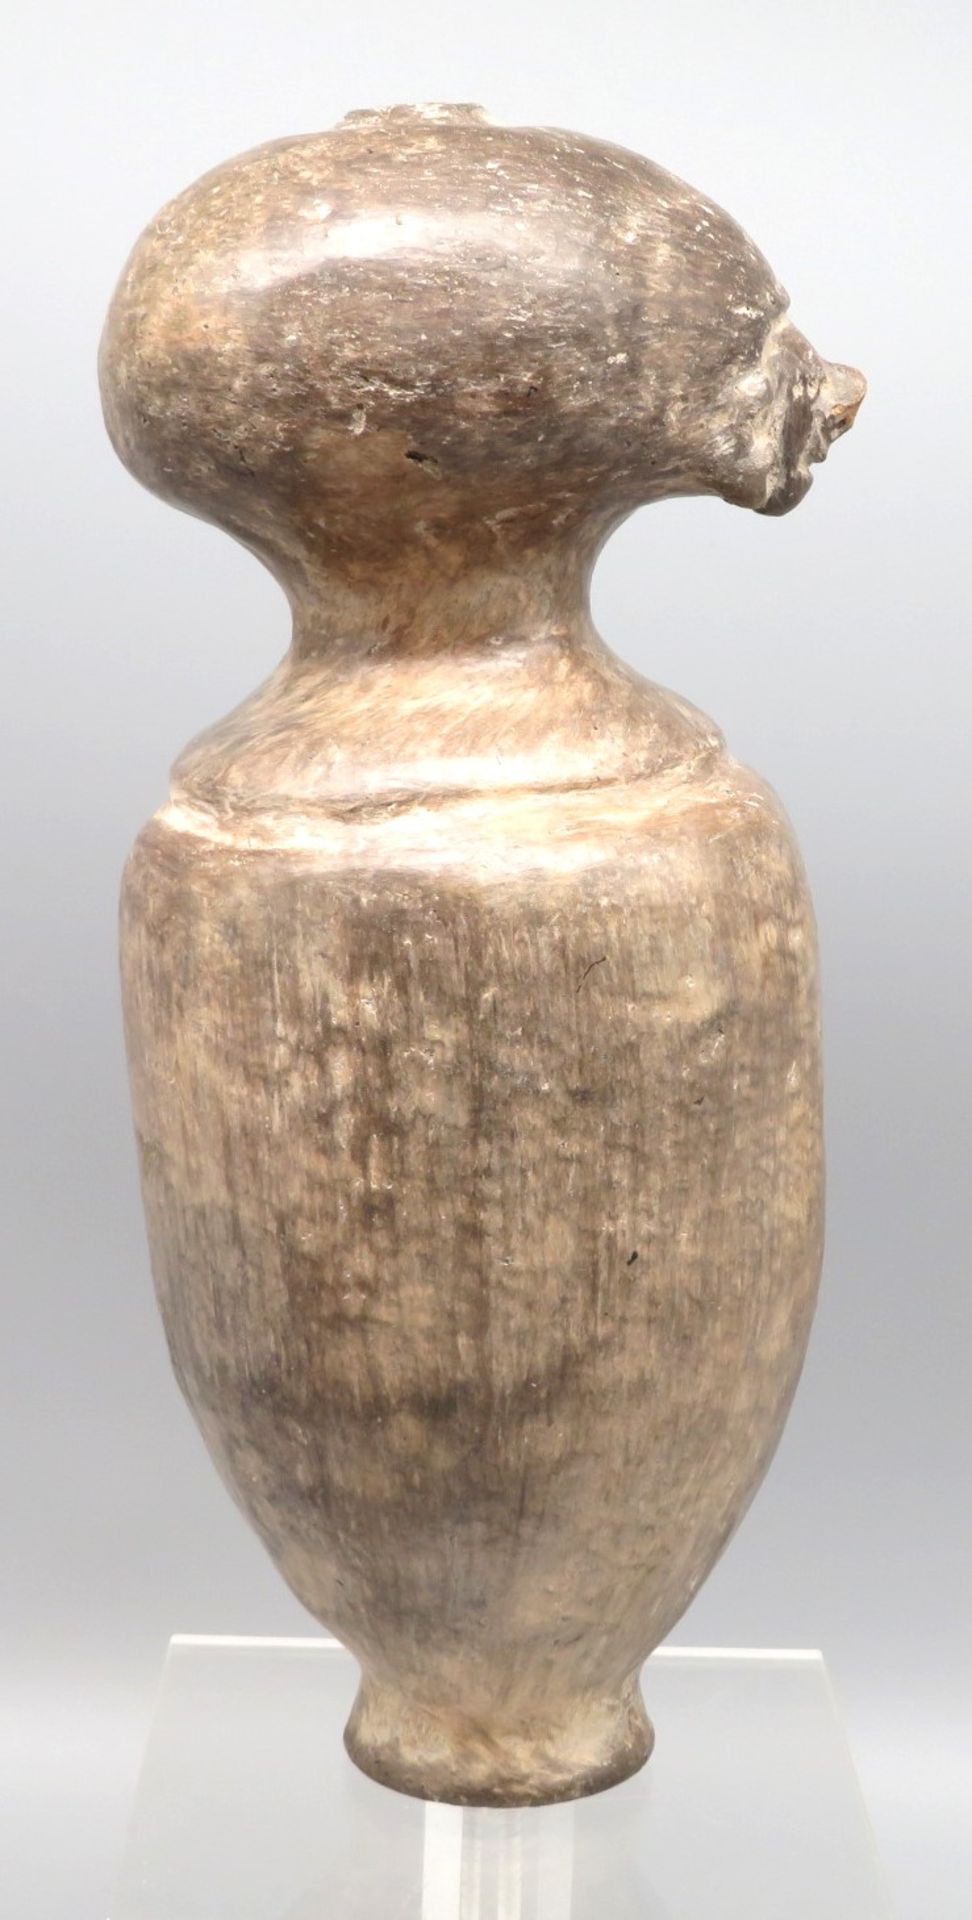 Seltene Skulptur, Ecuador, angenommenes Alter 500 - 1500 Jahre, Ton gebrannt, Thermoluminiszenz-Gut - Image 2 of 4